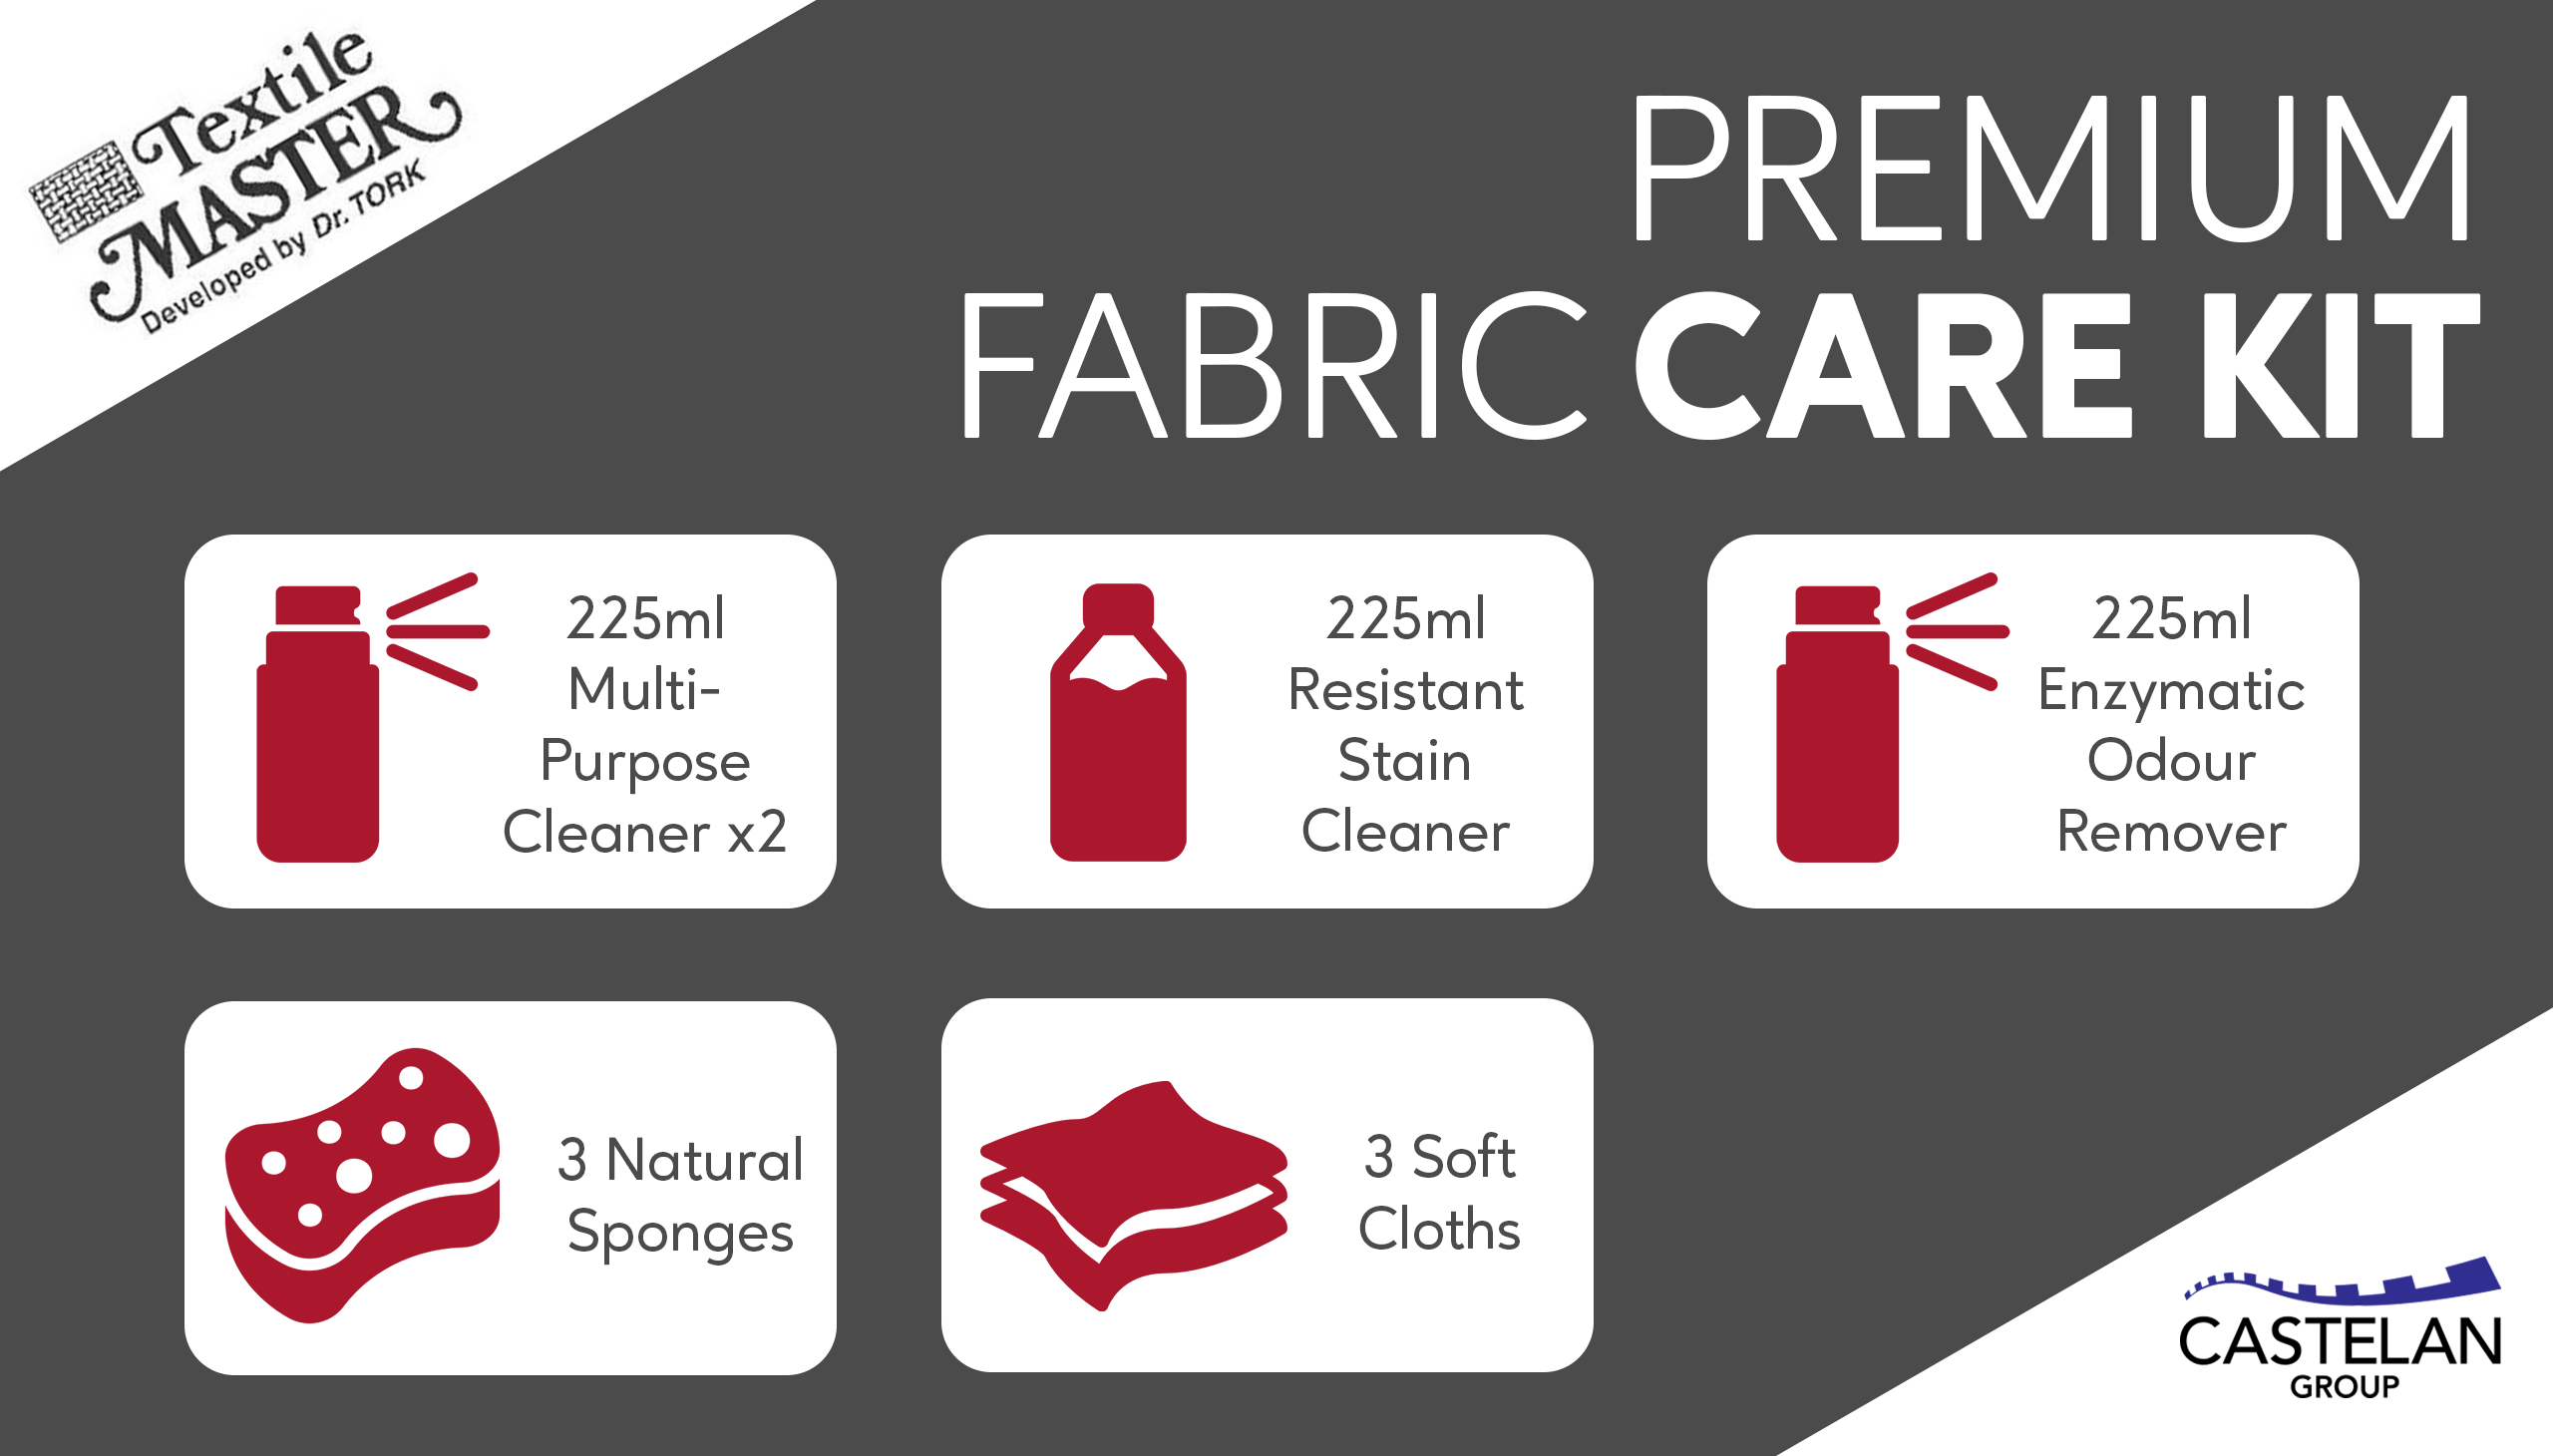 Castelan Premium Fabric Care Kit